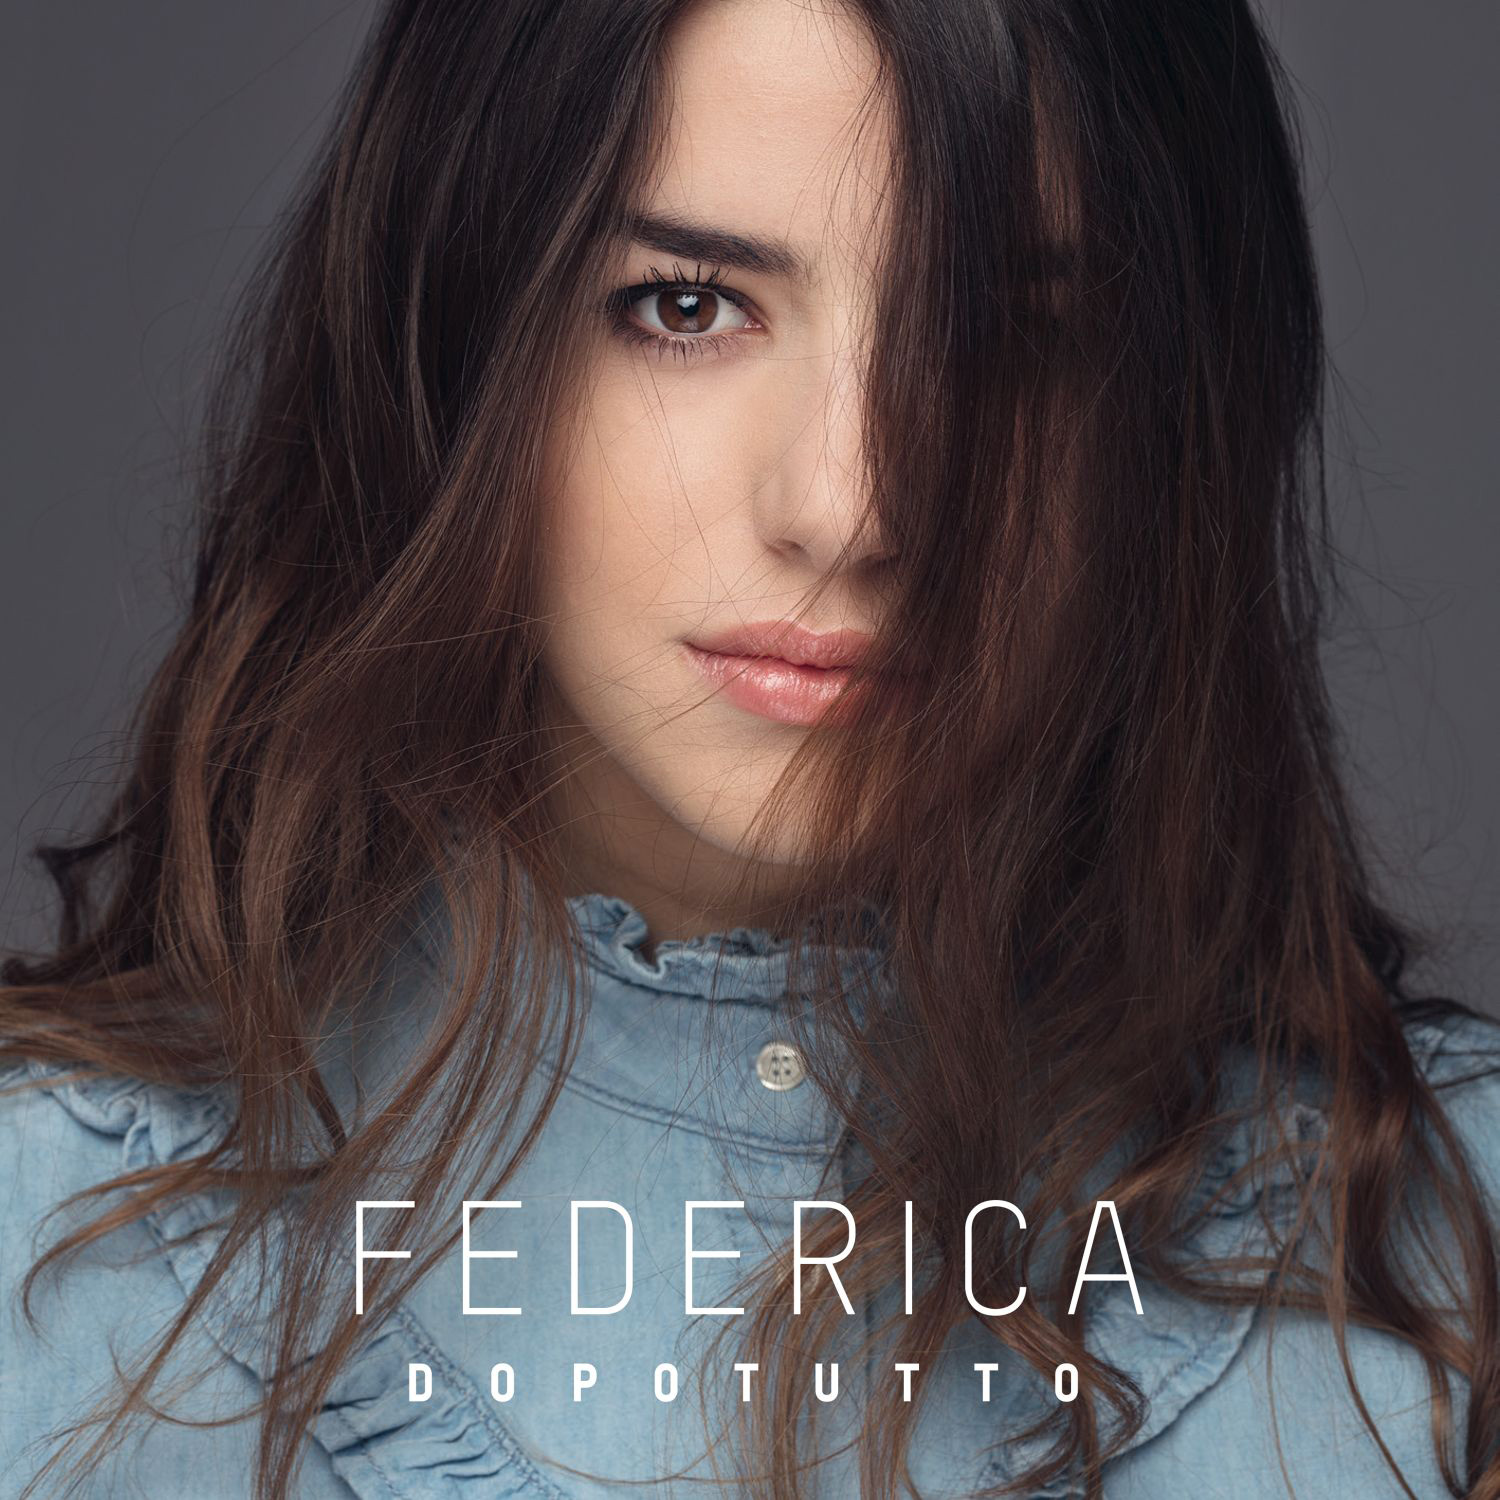 Amici 2017: FEDERICA in radio con  il singolo "Dopotutto"